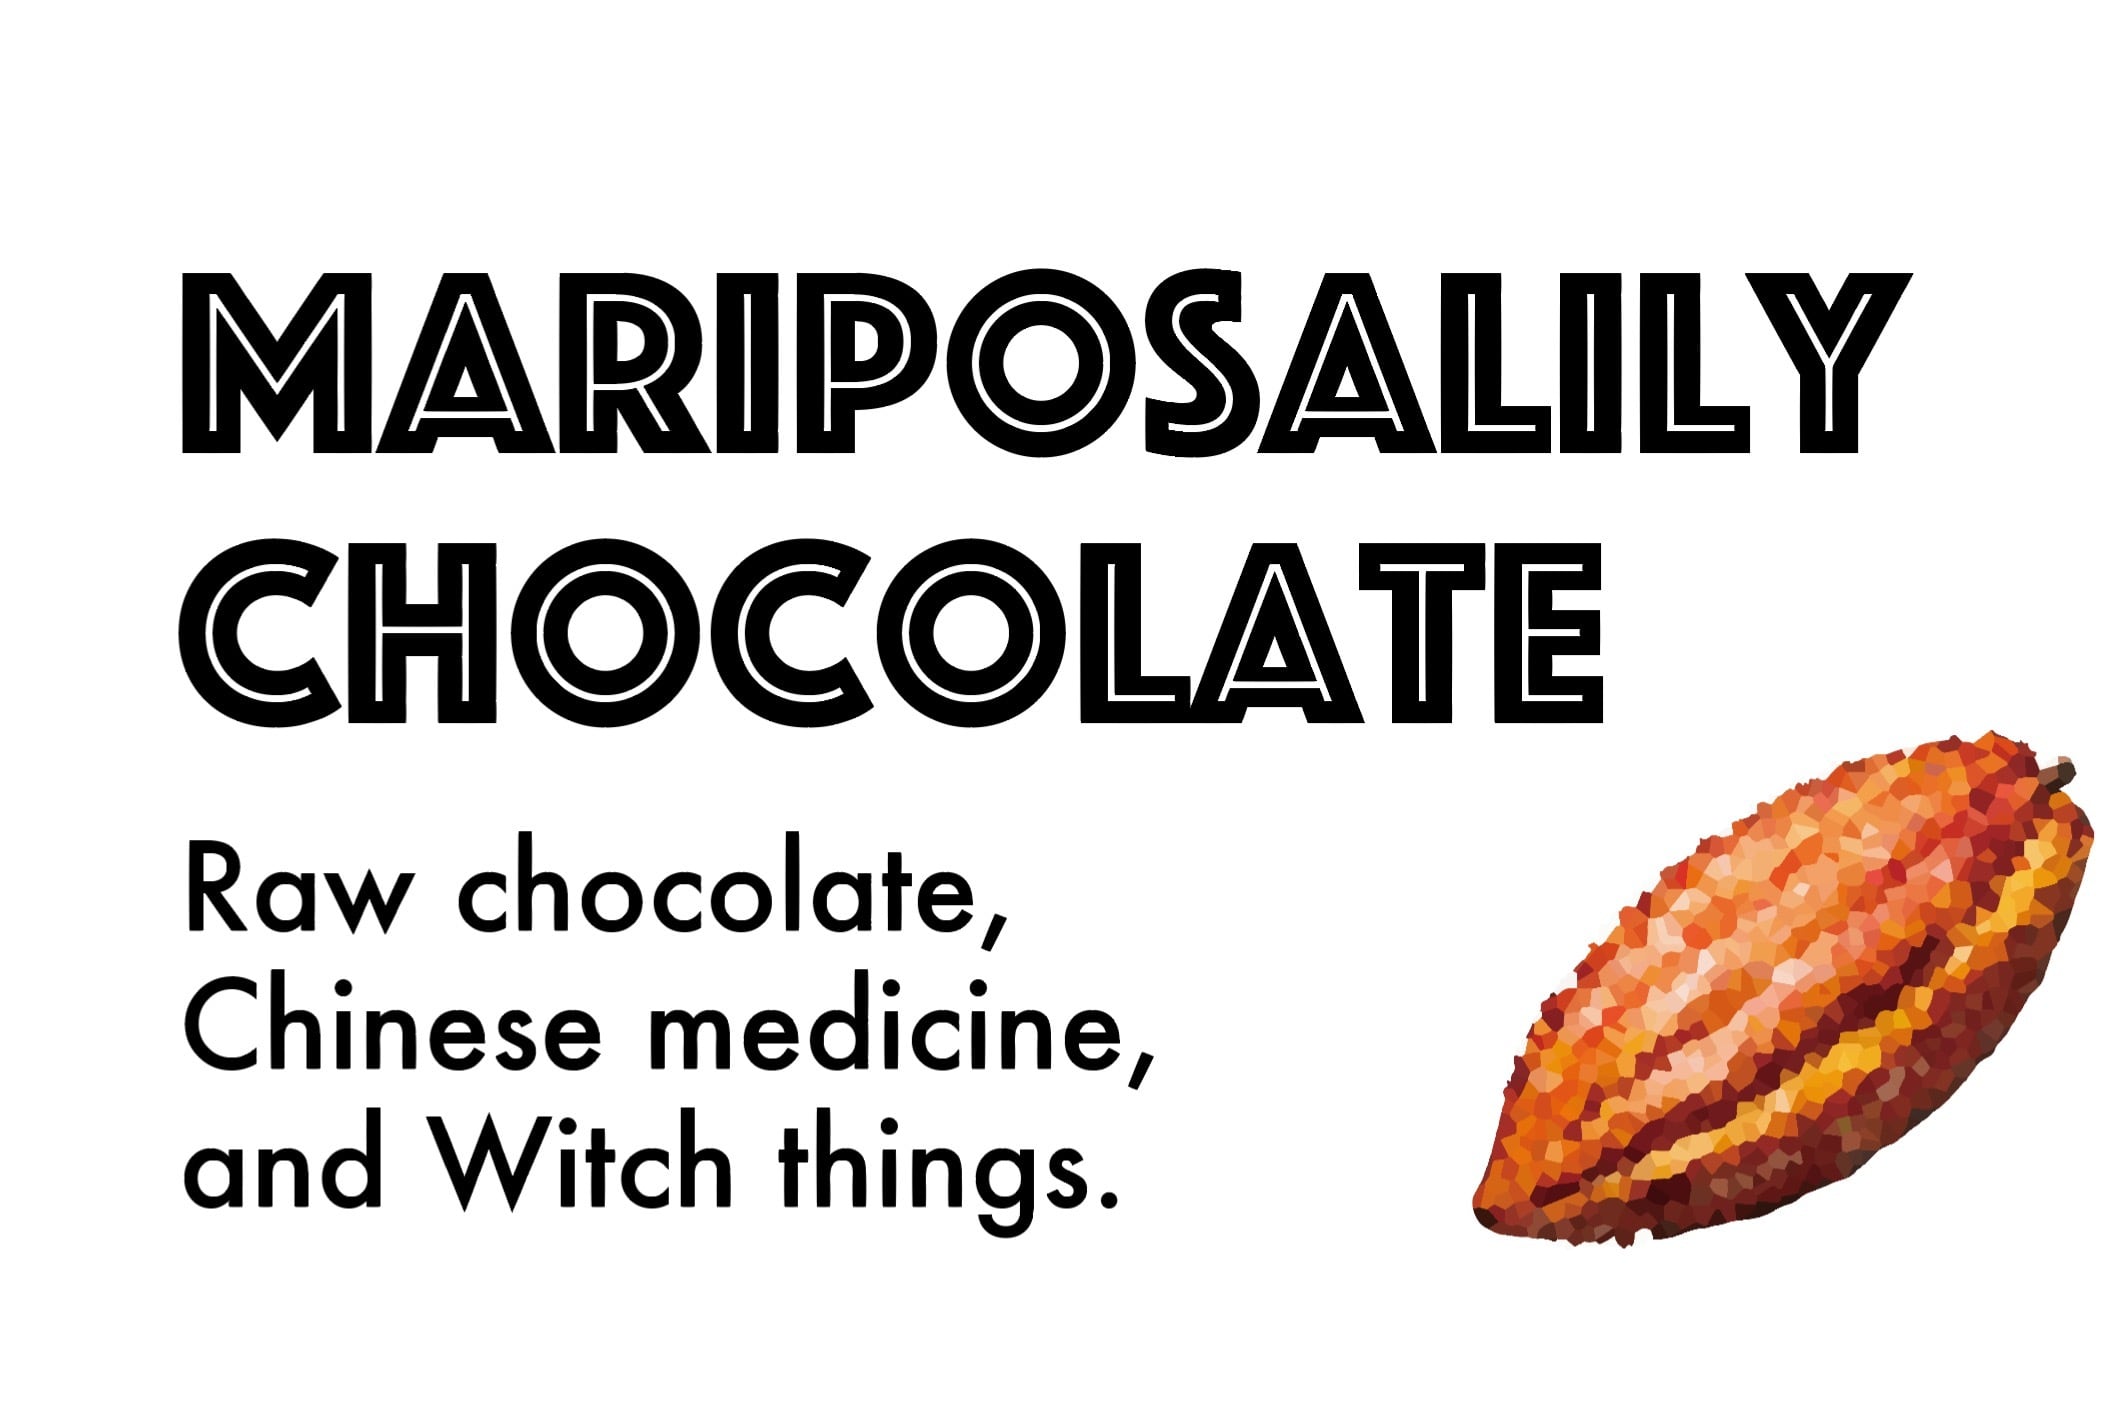 Mariposalily chocolate 